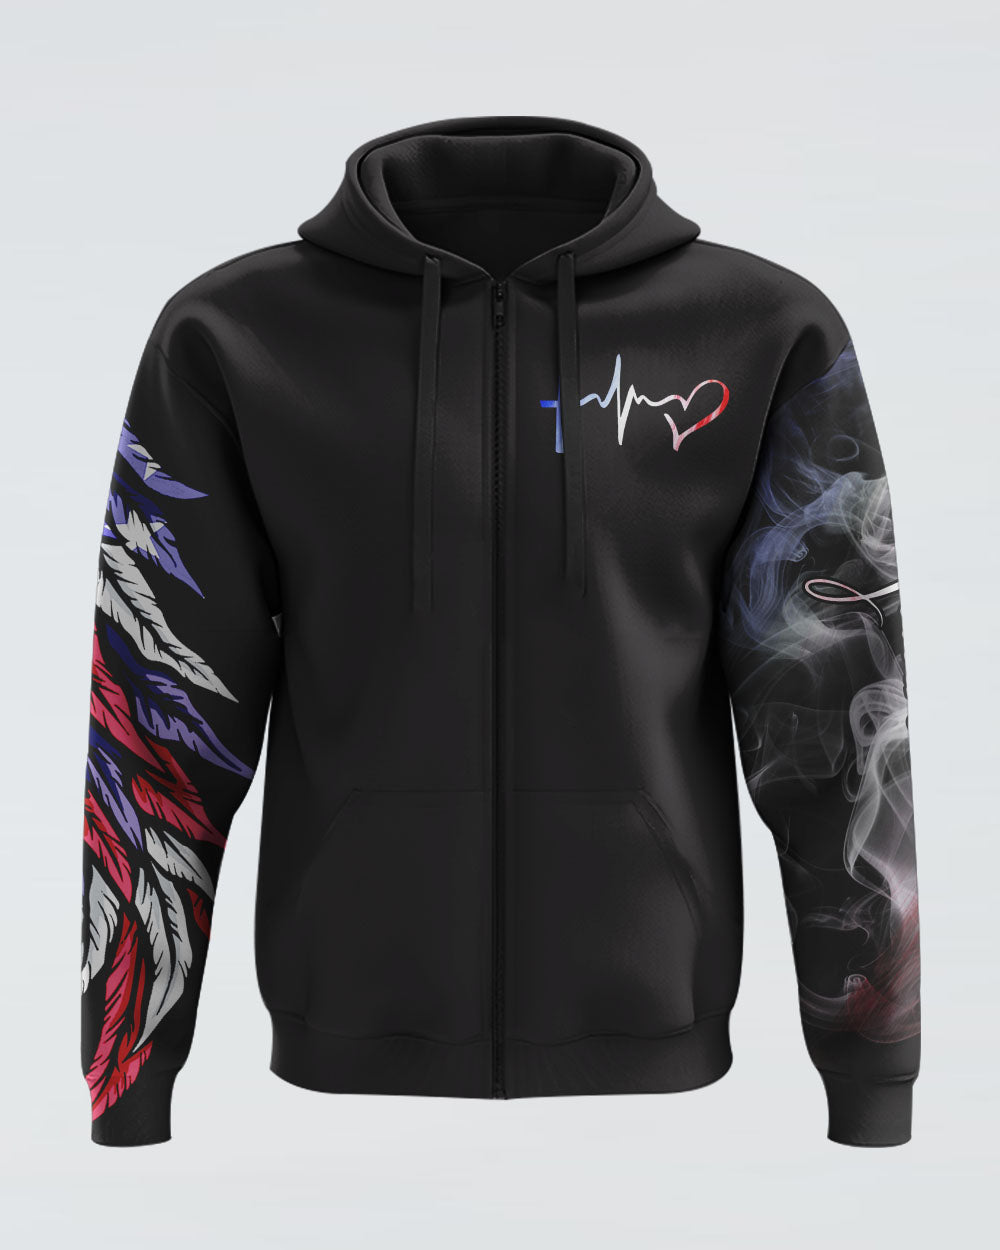 style_zip hoodie